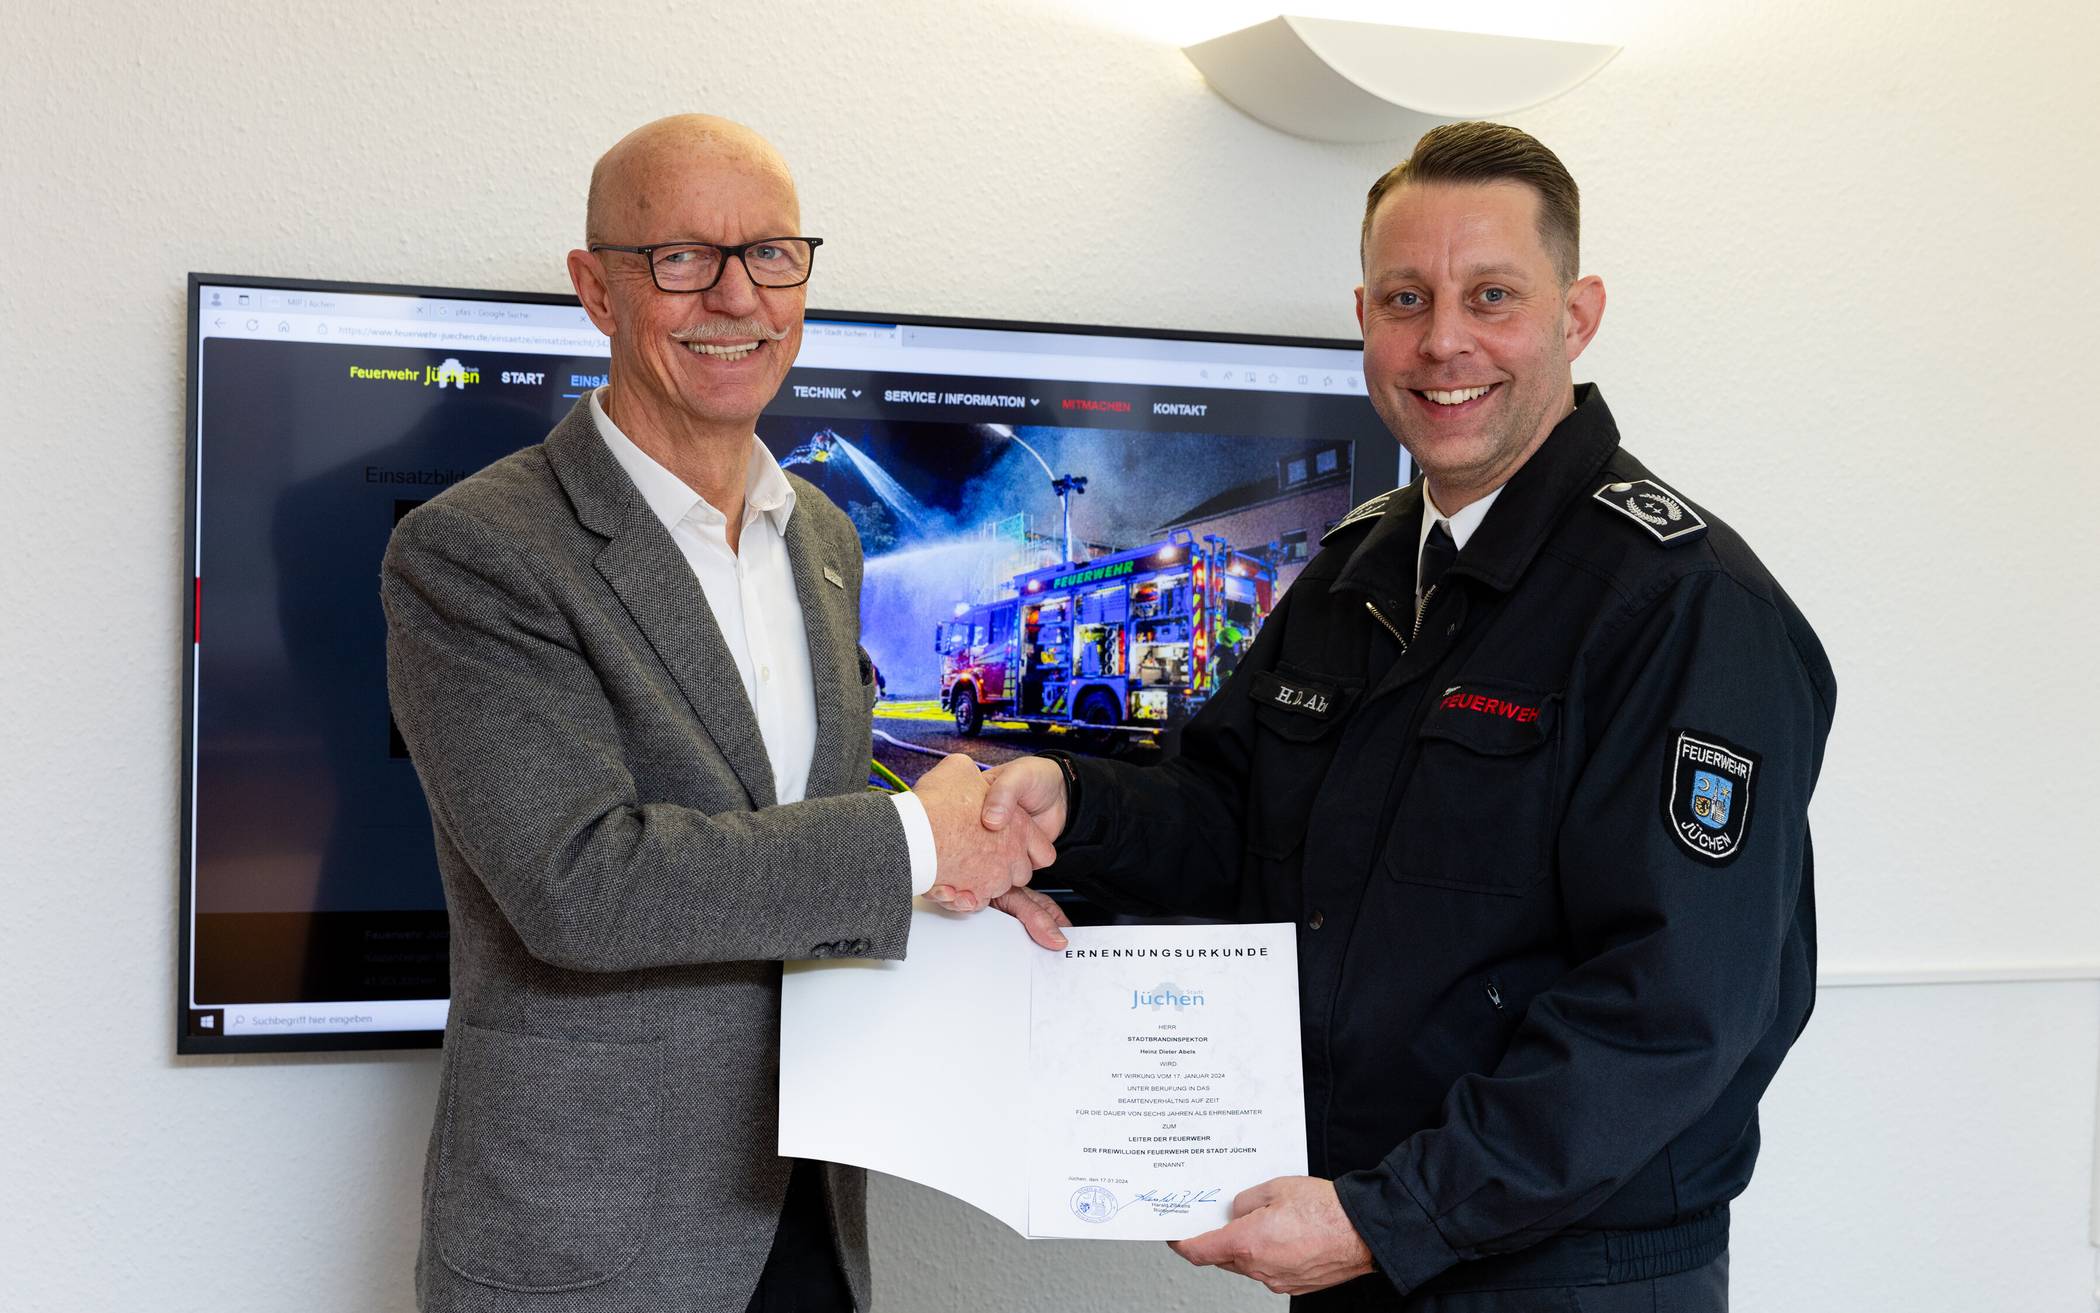    Bürgermeister Harald Zillikens (l.) ernannte Heinz-Dieter Abels für weitere sechs Jahre zum Leiter der Feuerwehr Jüchen. 